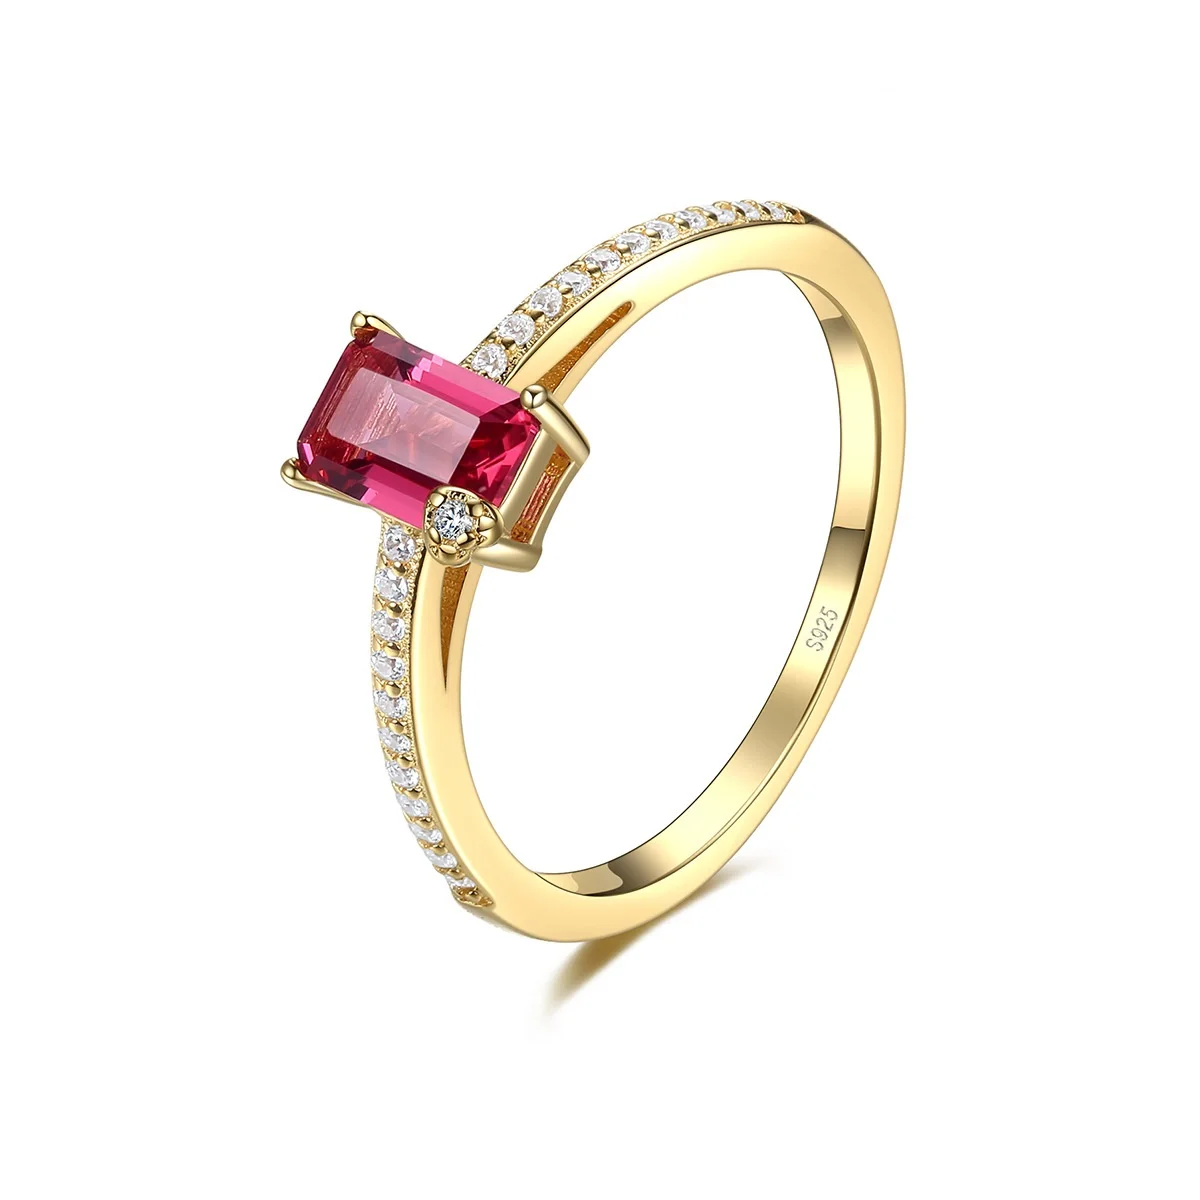 

Изящные Ювелирные изделия PSJ, элегантные покрытые 18-каратным золотом обручальные кольца для женщин с розовым и красным драгоценным камнем